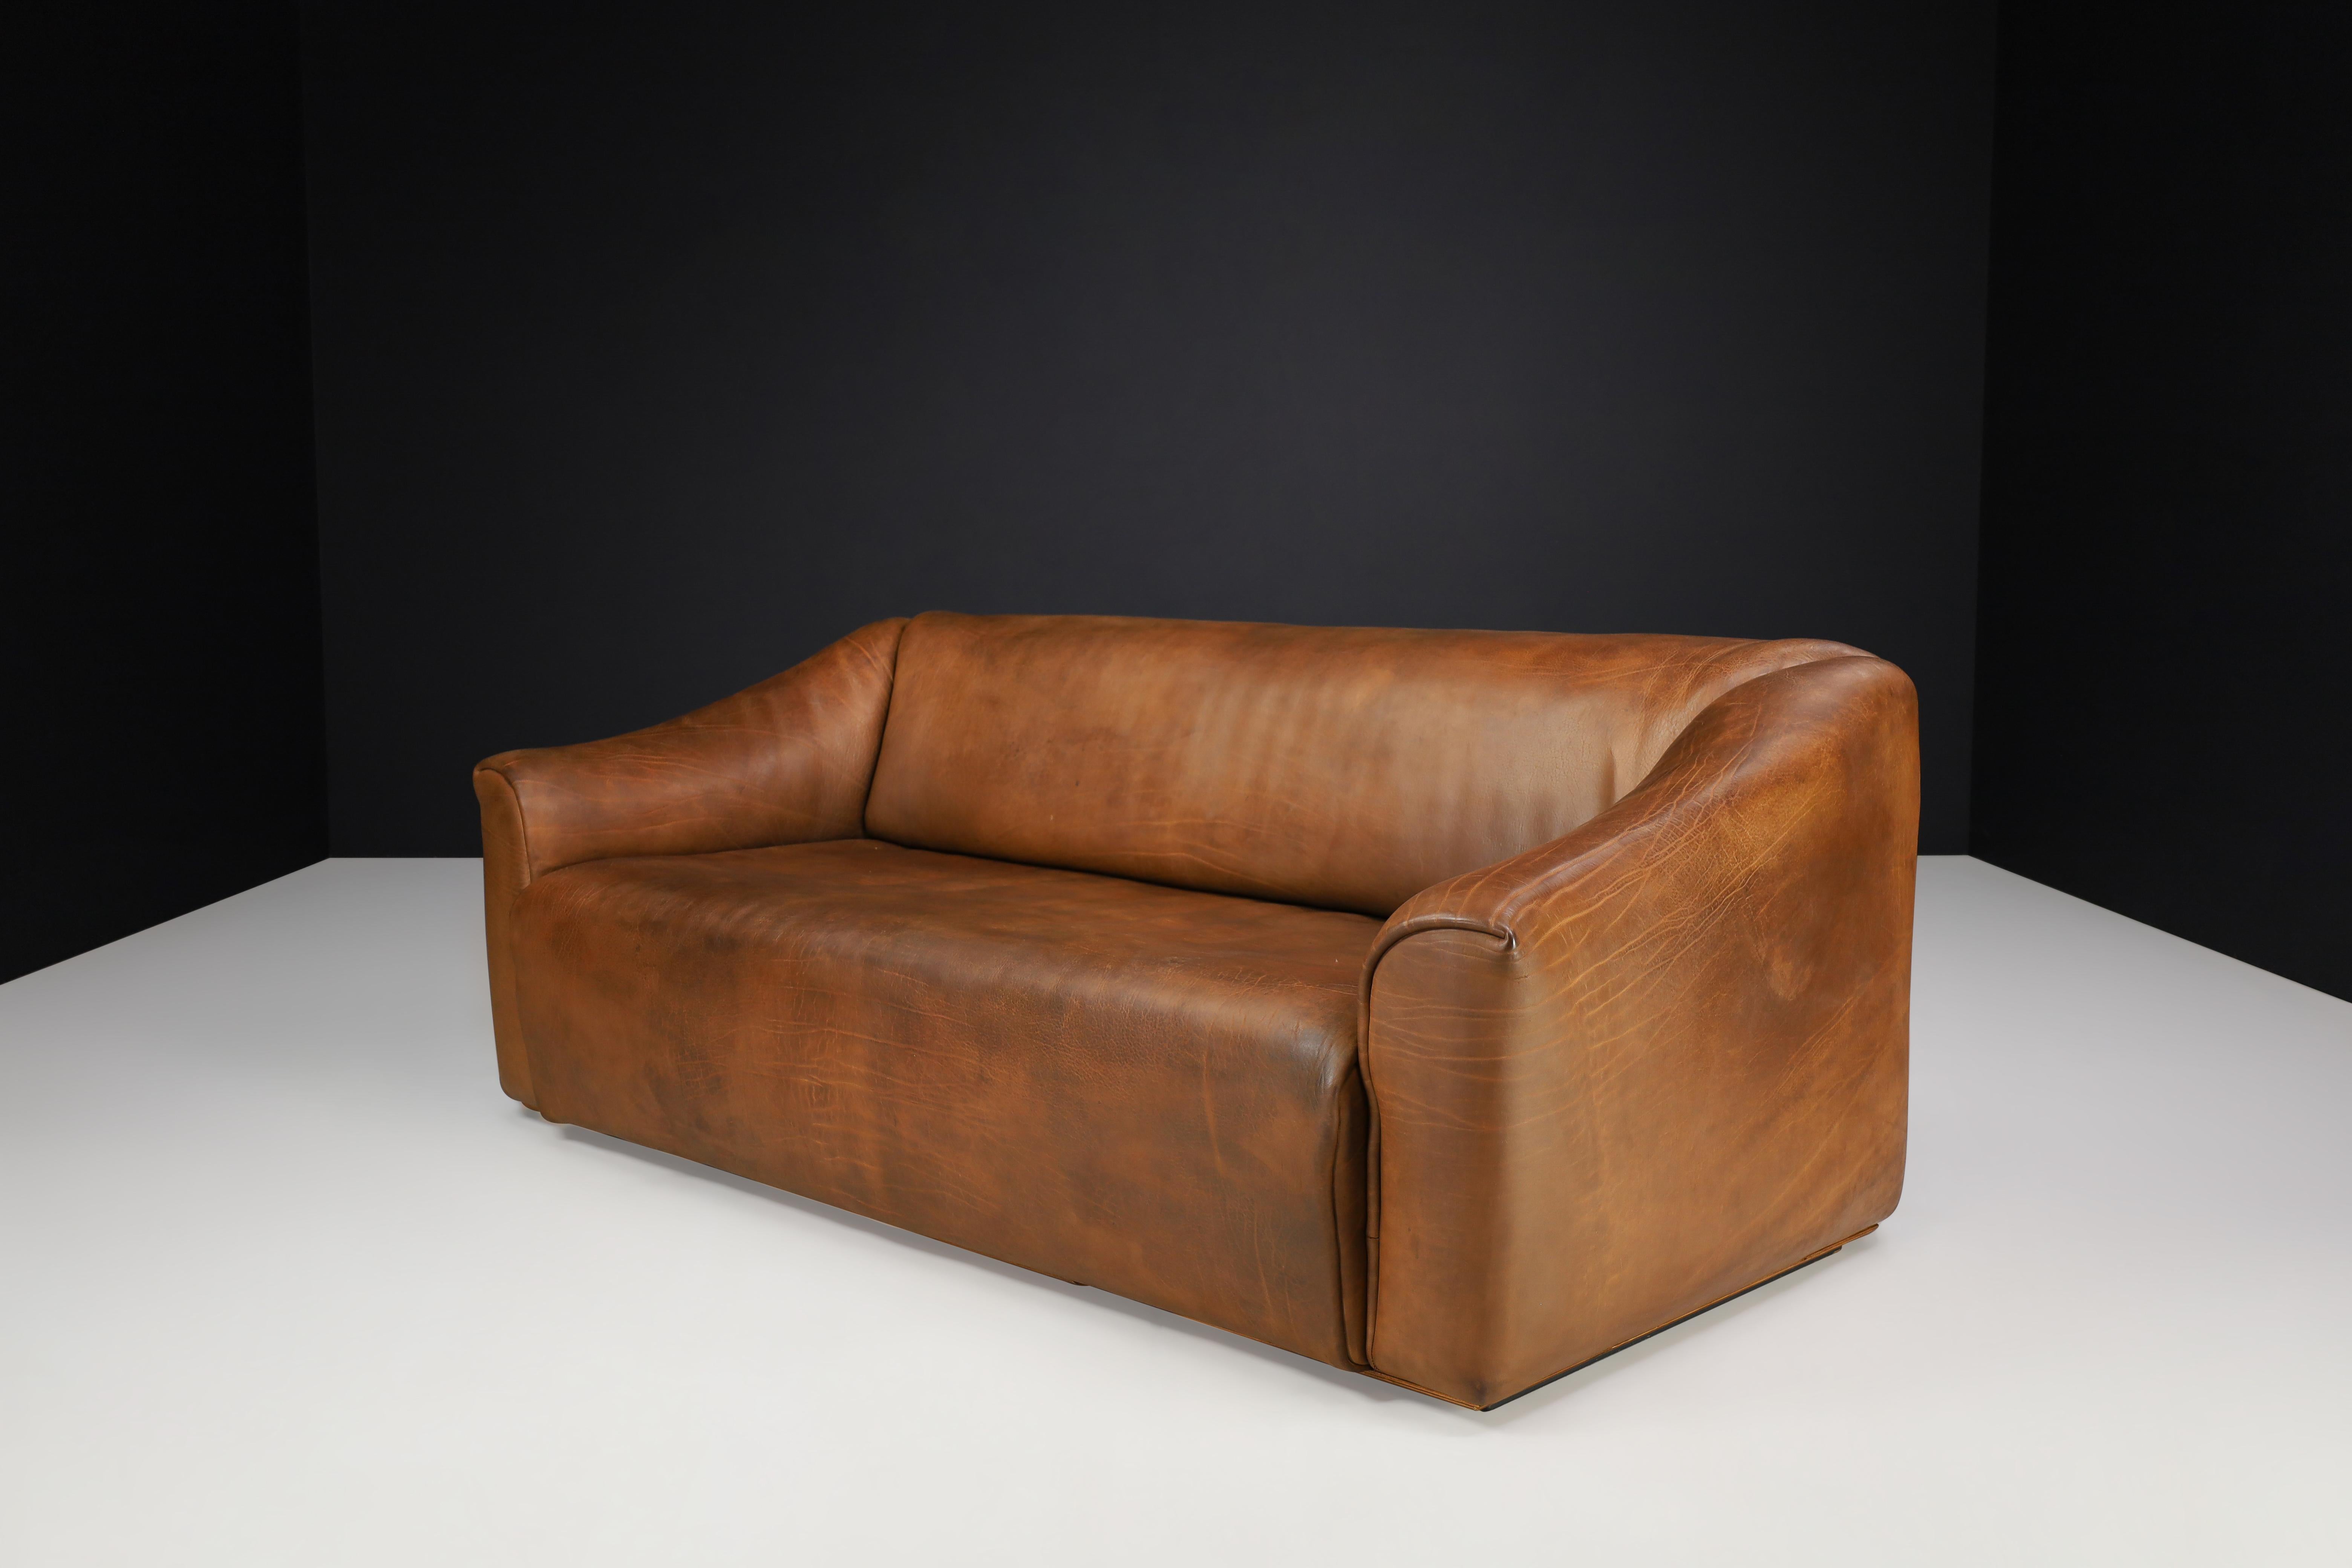 De Sede DS-47 Leder-Sofa mit Neckholder aus der Schweiz, 1970er Jahre

Wir präsentieren ein De Sede DS-47 Nackenledersofa aus der Schweiz, das in den 1970er Jahren hergestellt wurde. Dieses Sofa ist ein robustes und komfortables Möbelstück, das aus